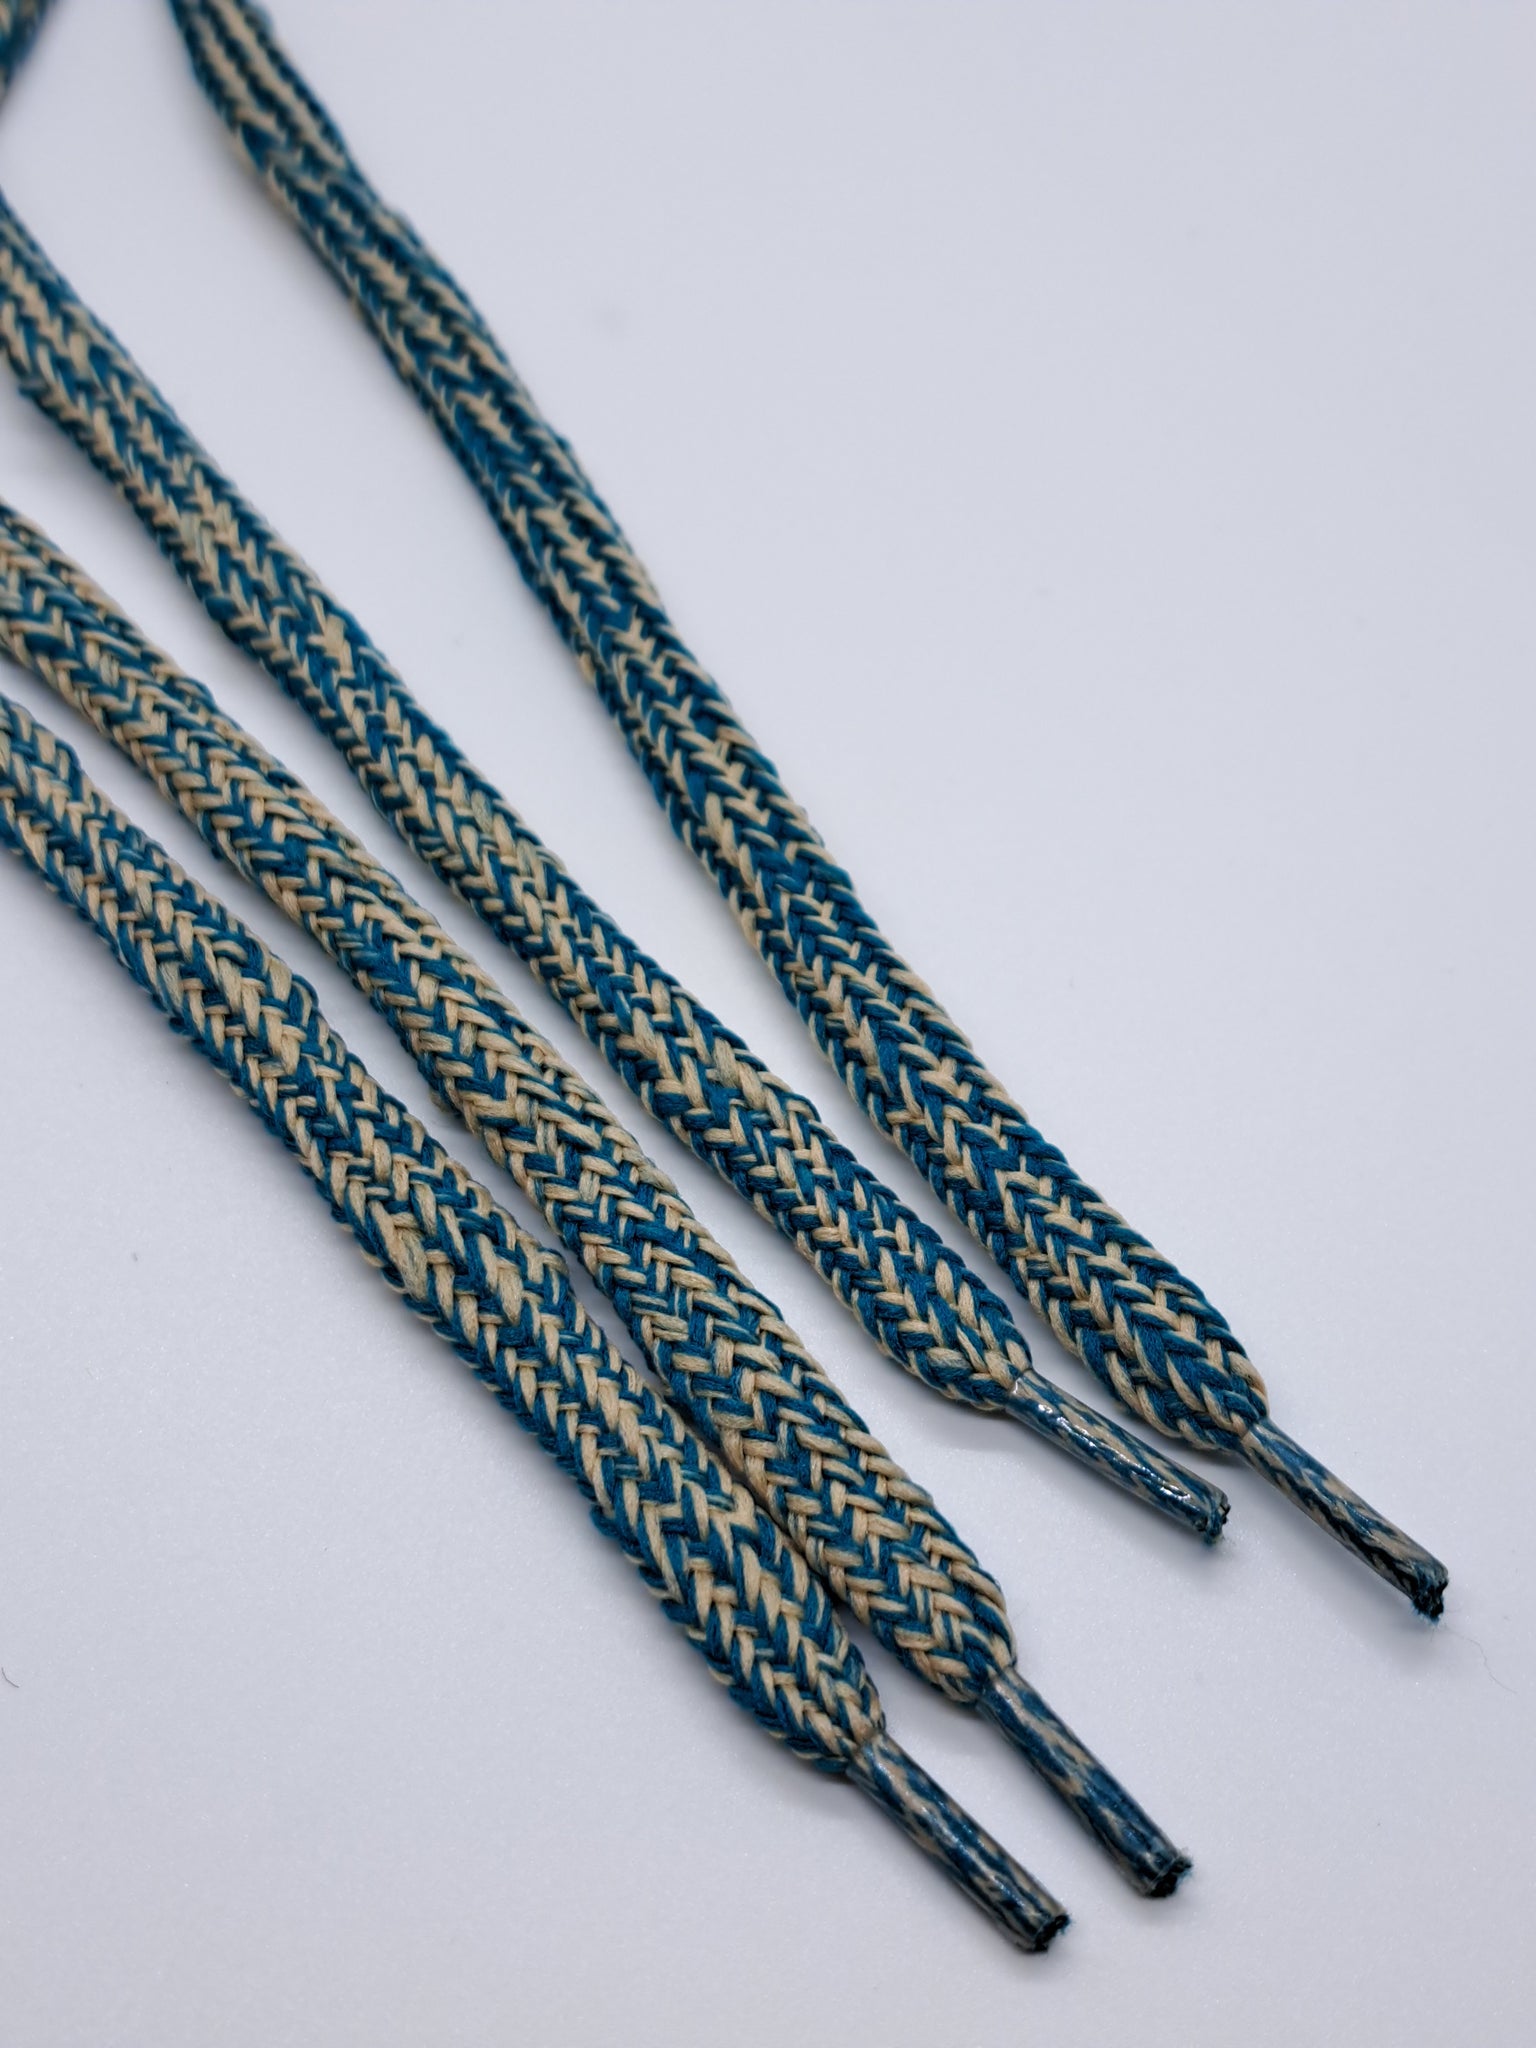 Hybrid Tweed Shoelaces - Teal and Tan